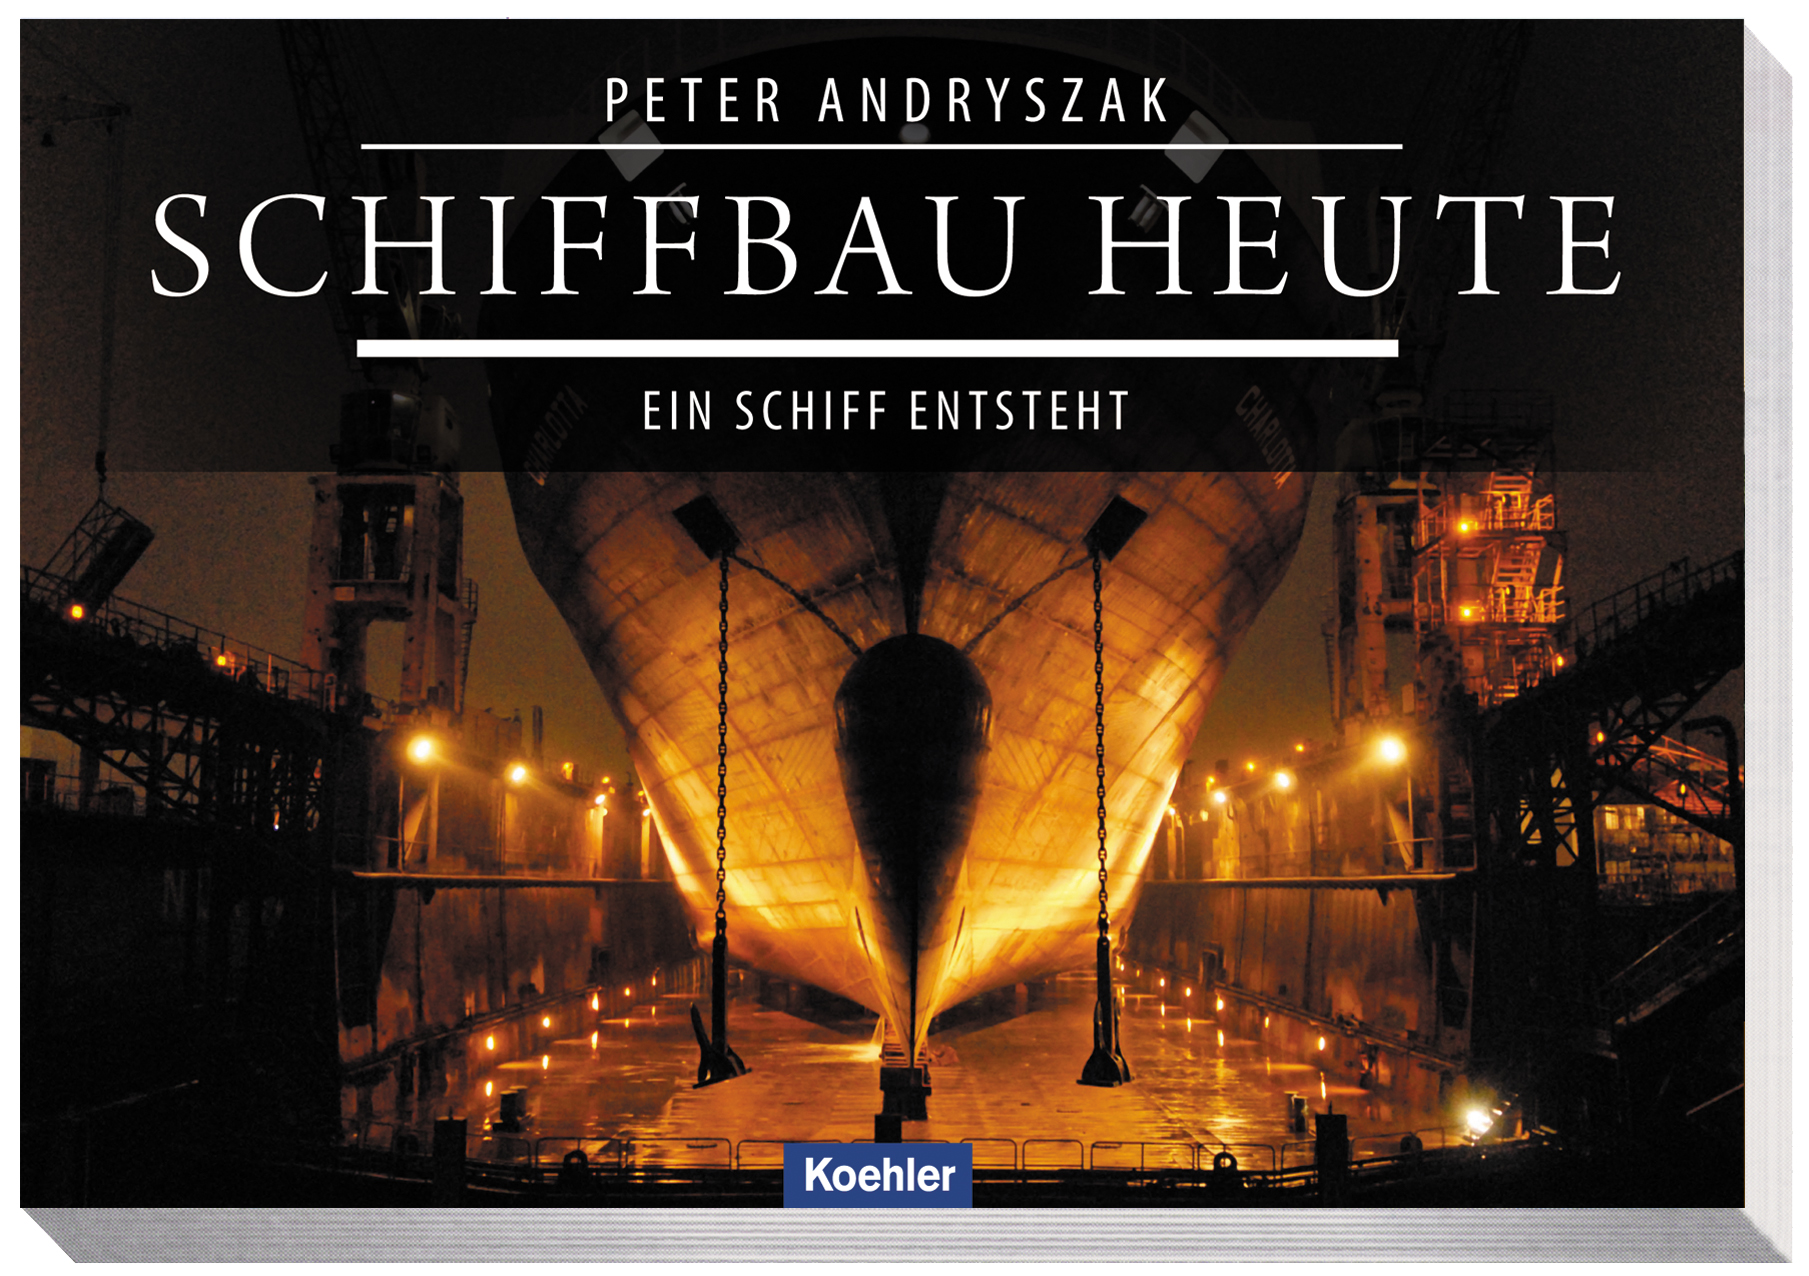 Buchrezension von Schiffbau heute von Peter Andryszak aus dem Verlag Koehlers Verlagsgesellschaft. Für Laien sehr gut, sonst zu allgemein.